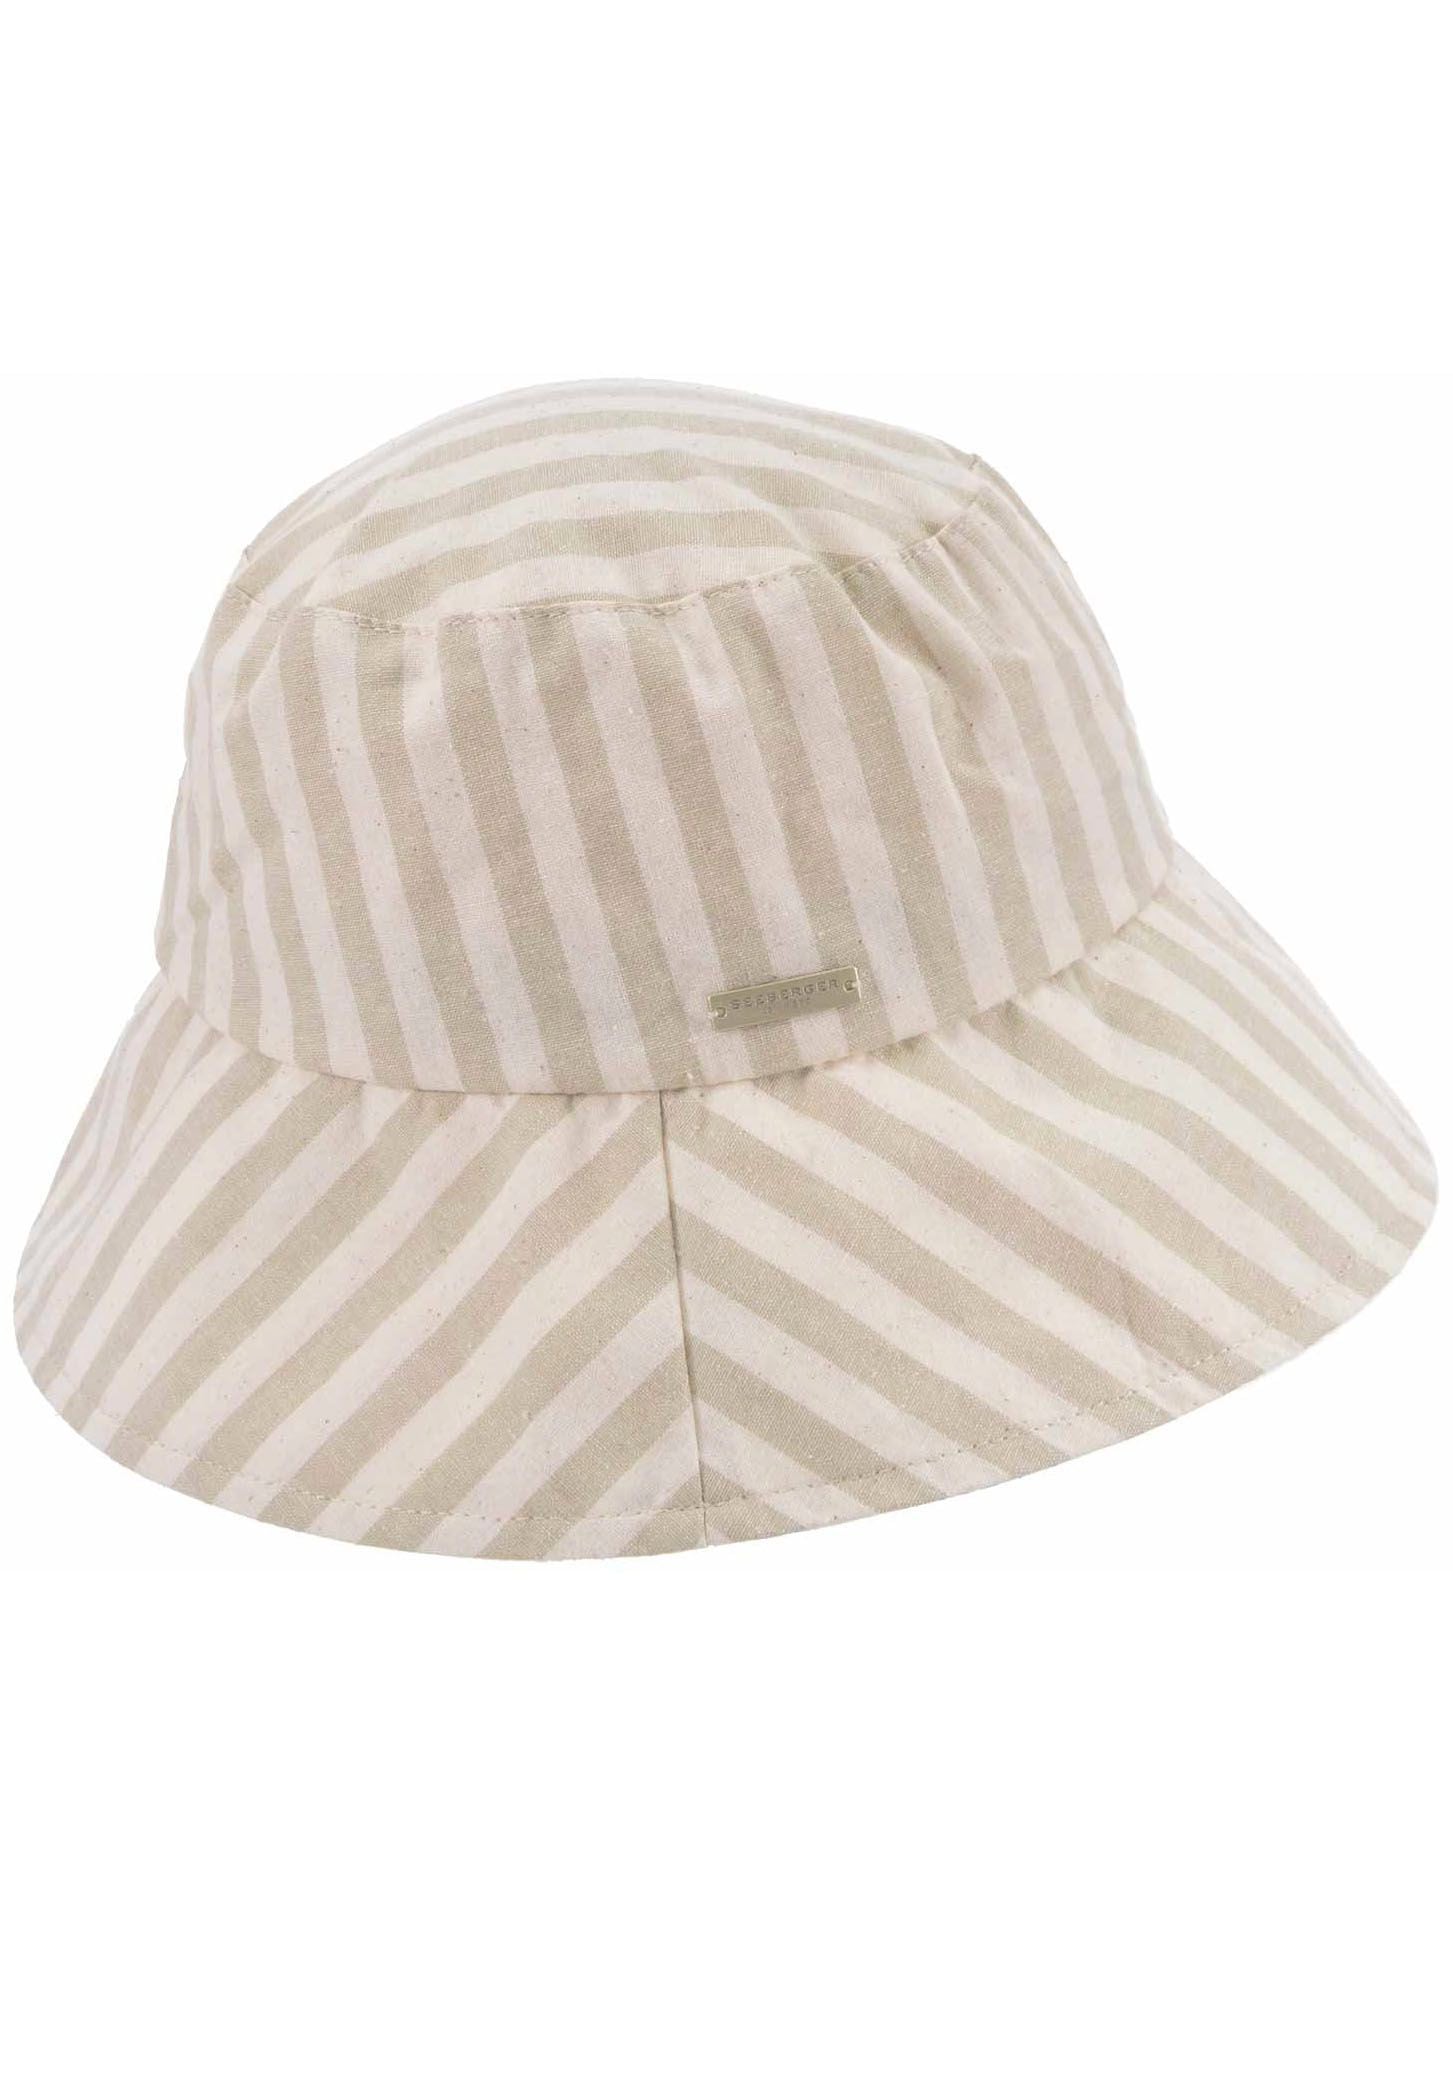 Bucket Fischerhut, UNIVERSAL kaufen | Seeberger Hat